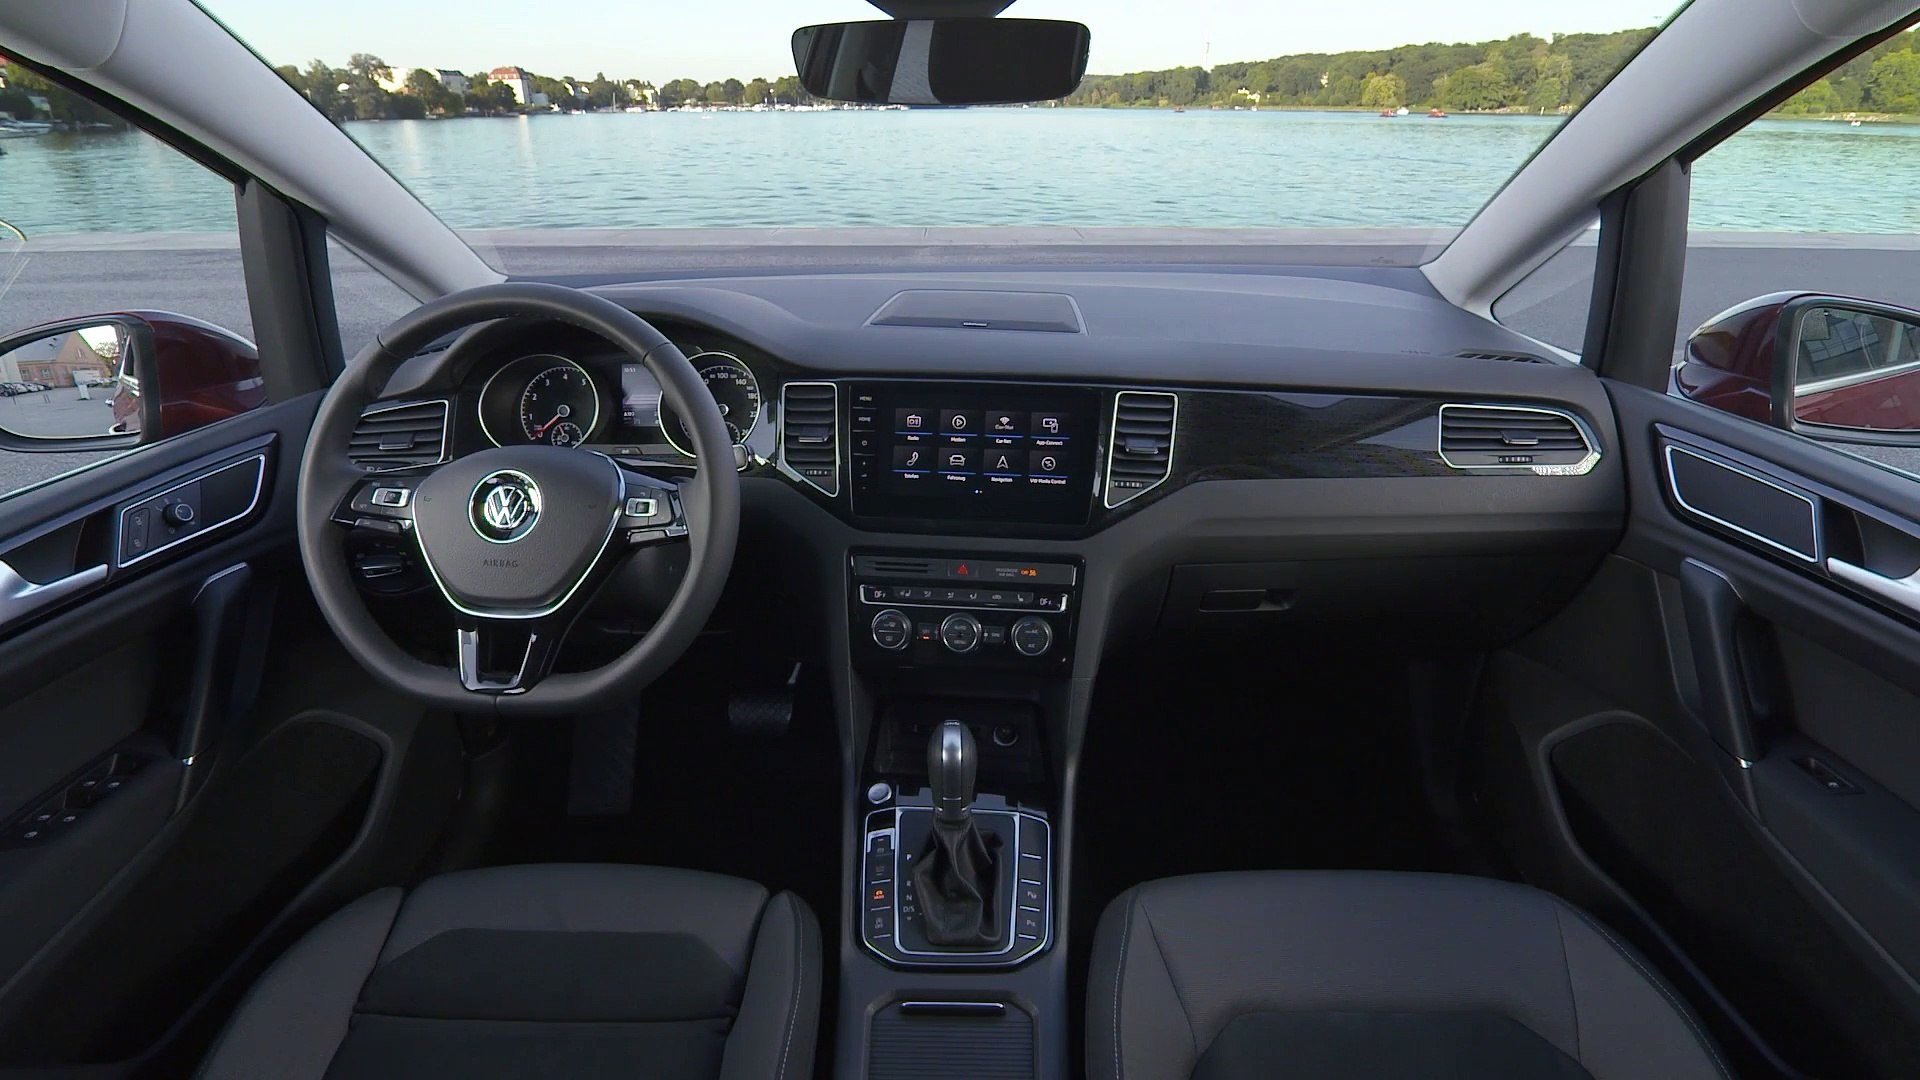 The new Volkswagen Golf Sportsvan Interior Design - video Dailymotion